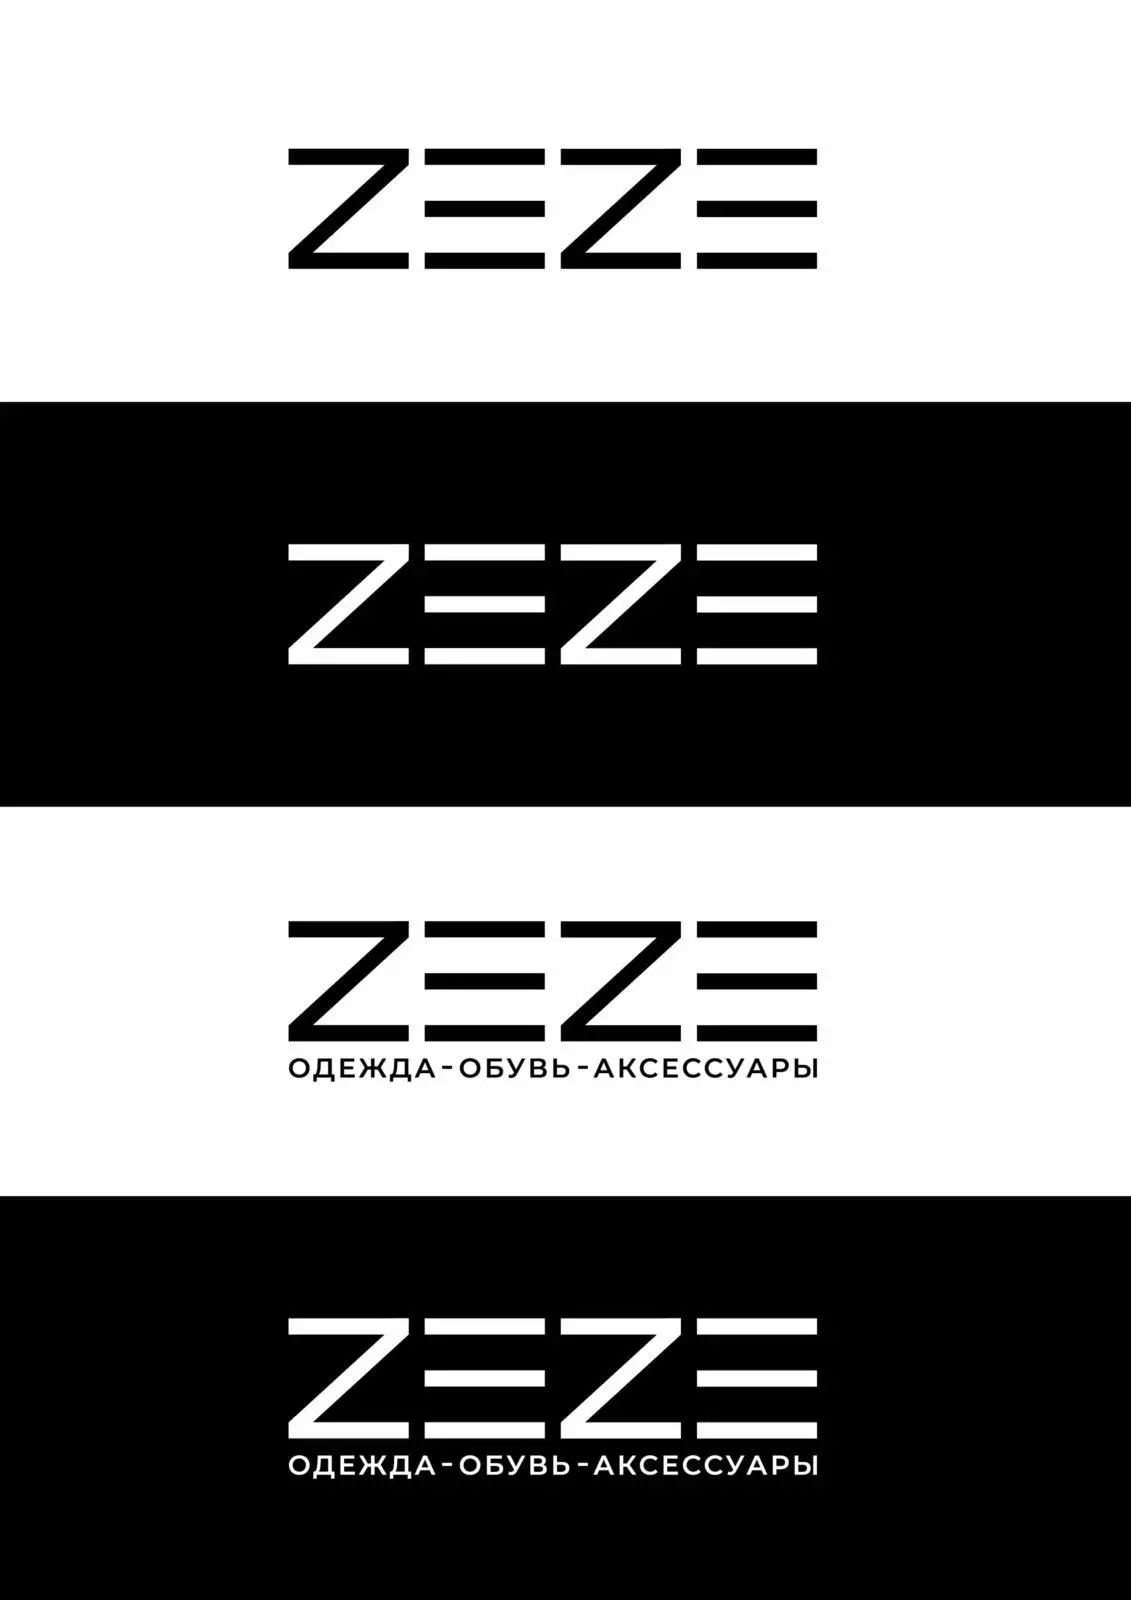 Логотип Для Магазина Одежды Вариант 2